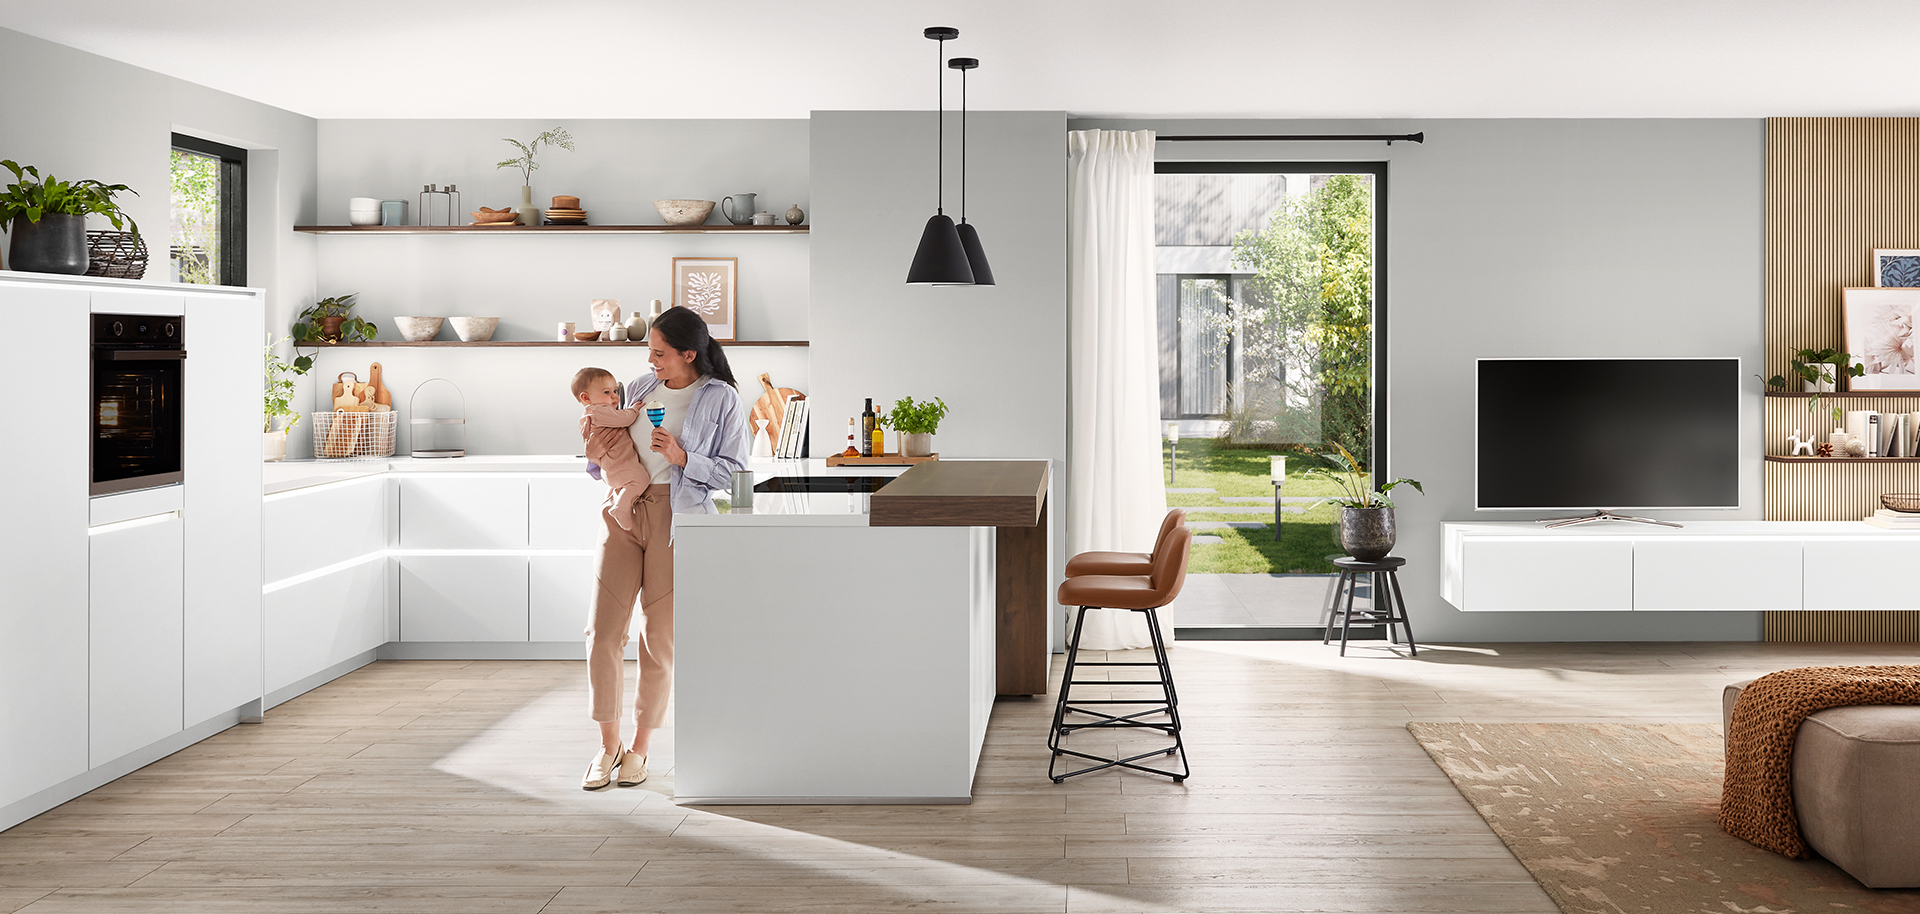 Intérieur de cuisine moderne avec un design propre et minimaliste comprenant des armoires blanches, un îlot central et une jeune mère tenant affectueusement son enfant.